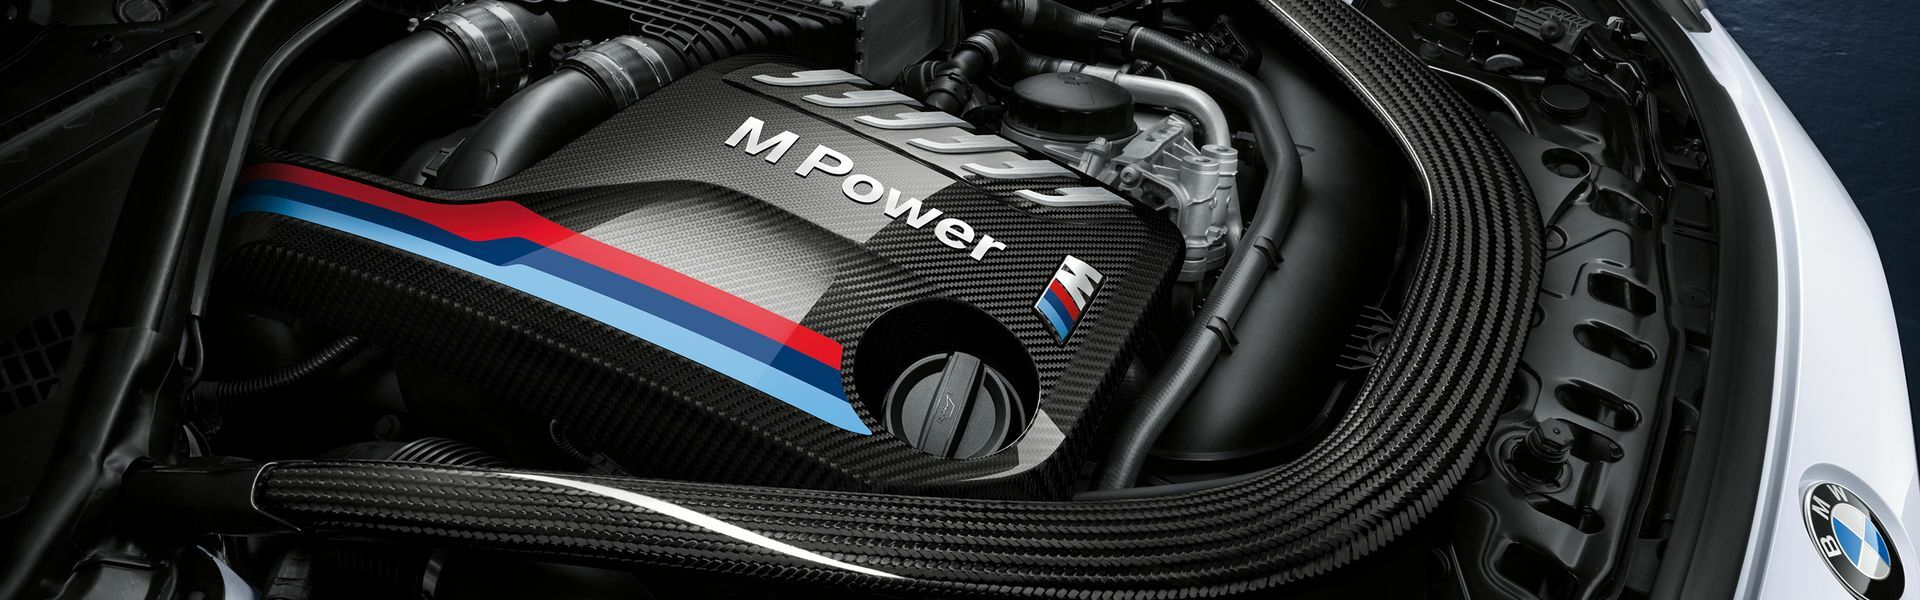 Zvýšení výkonu/ Softwarové úpravy/ Drobné performance díly pro automobil Porsche Panamera 970